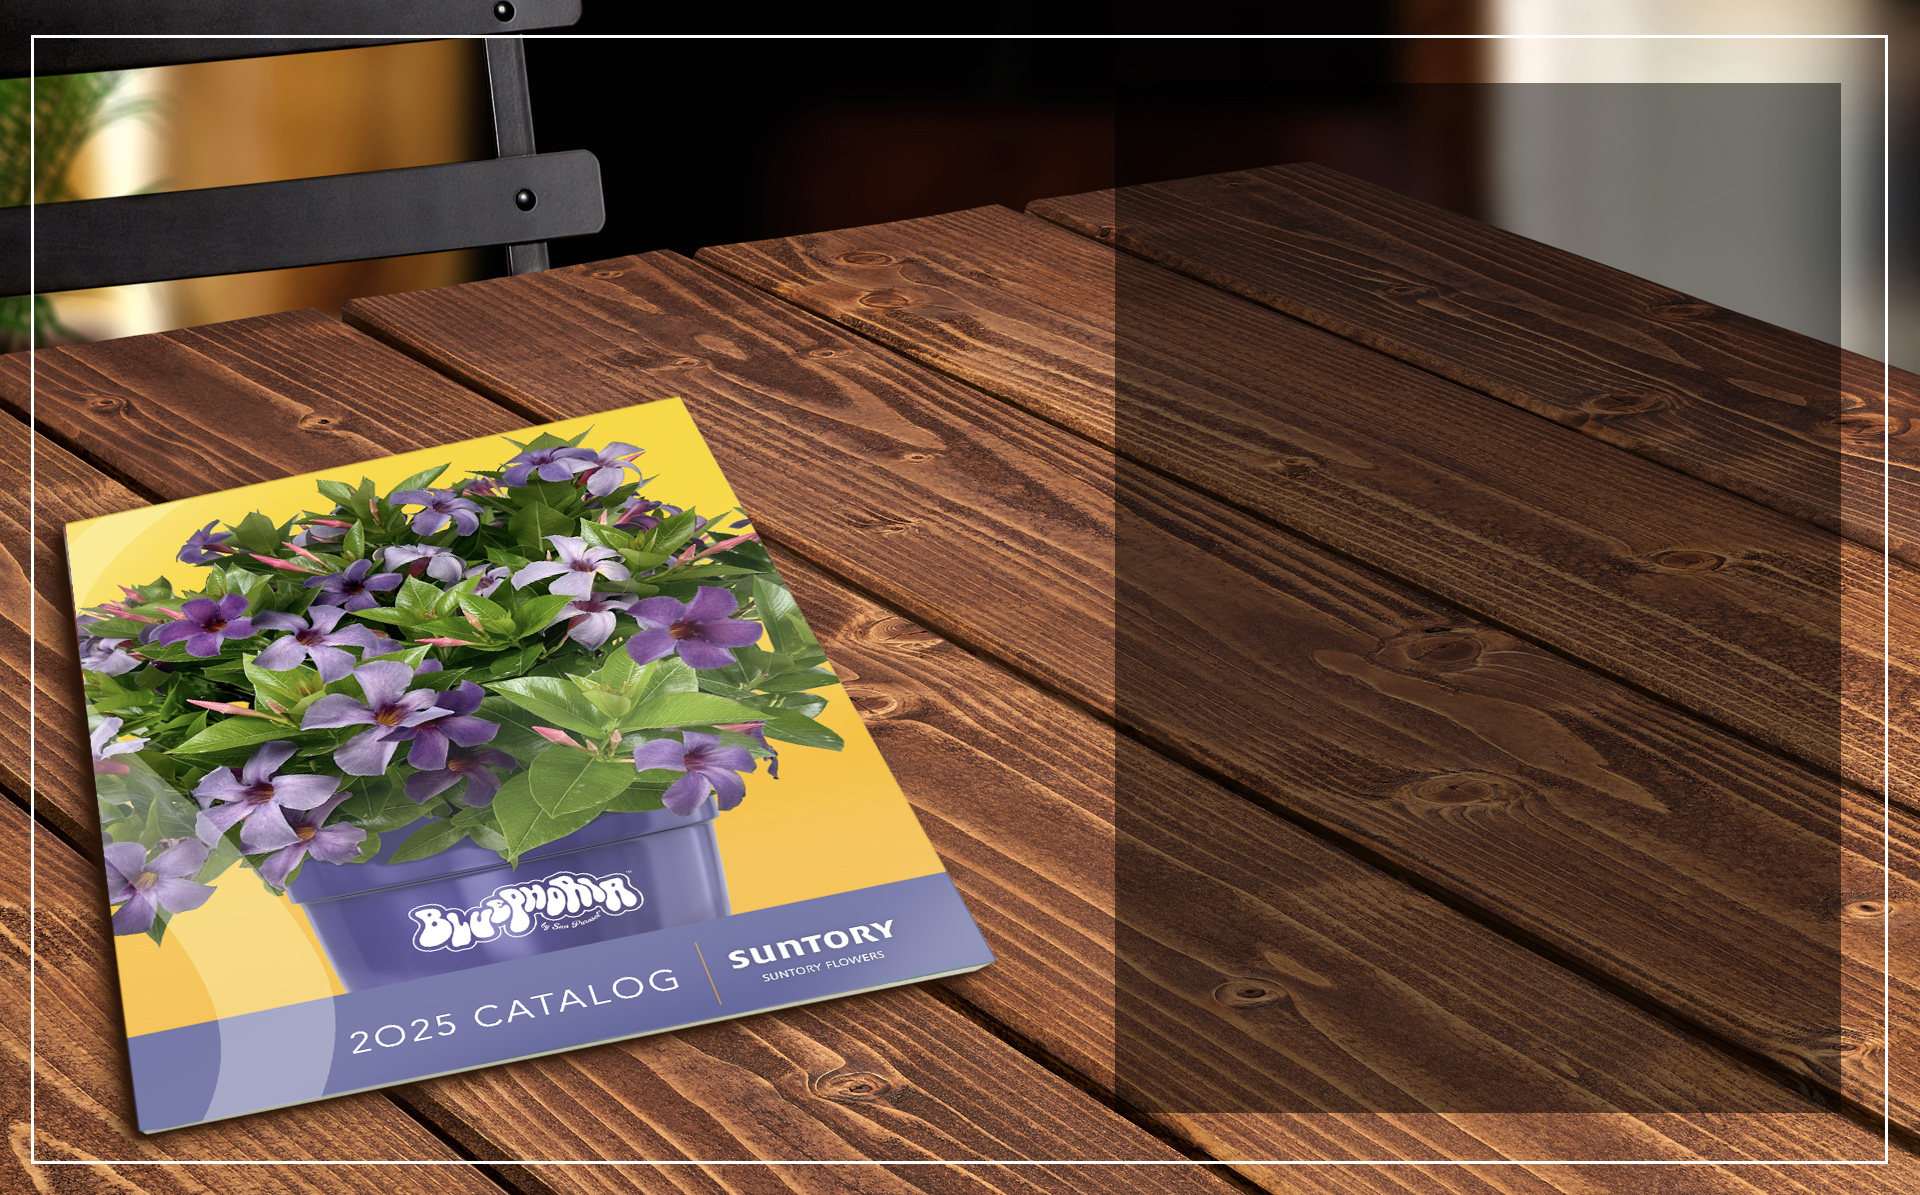 Suntory flower source book